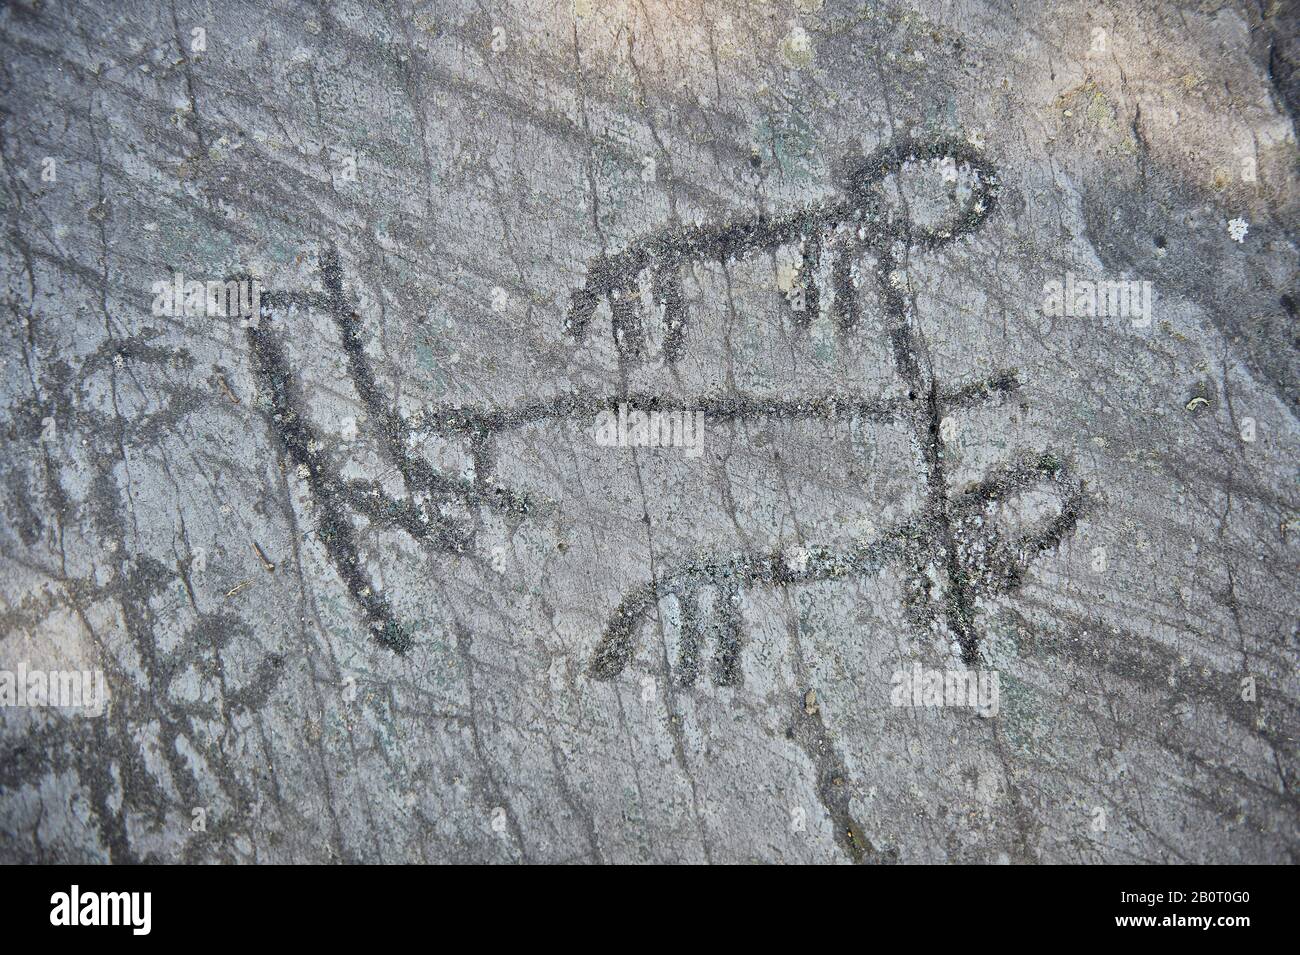 Petroglifo, escultura esquemática en roca, de arar usando 2 animales y figuras esquemáticas sosteniendo un arado vertical que se curva hacia adelante en el fondo Foto de stock